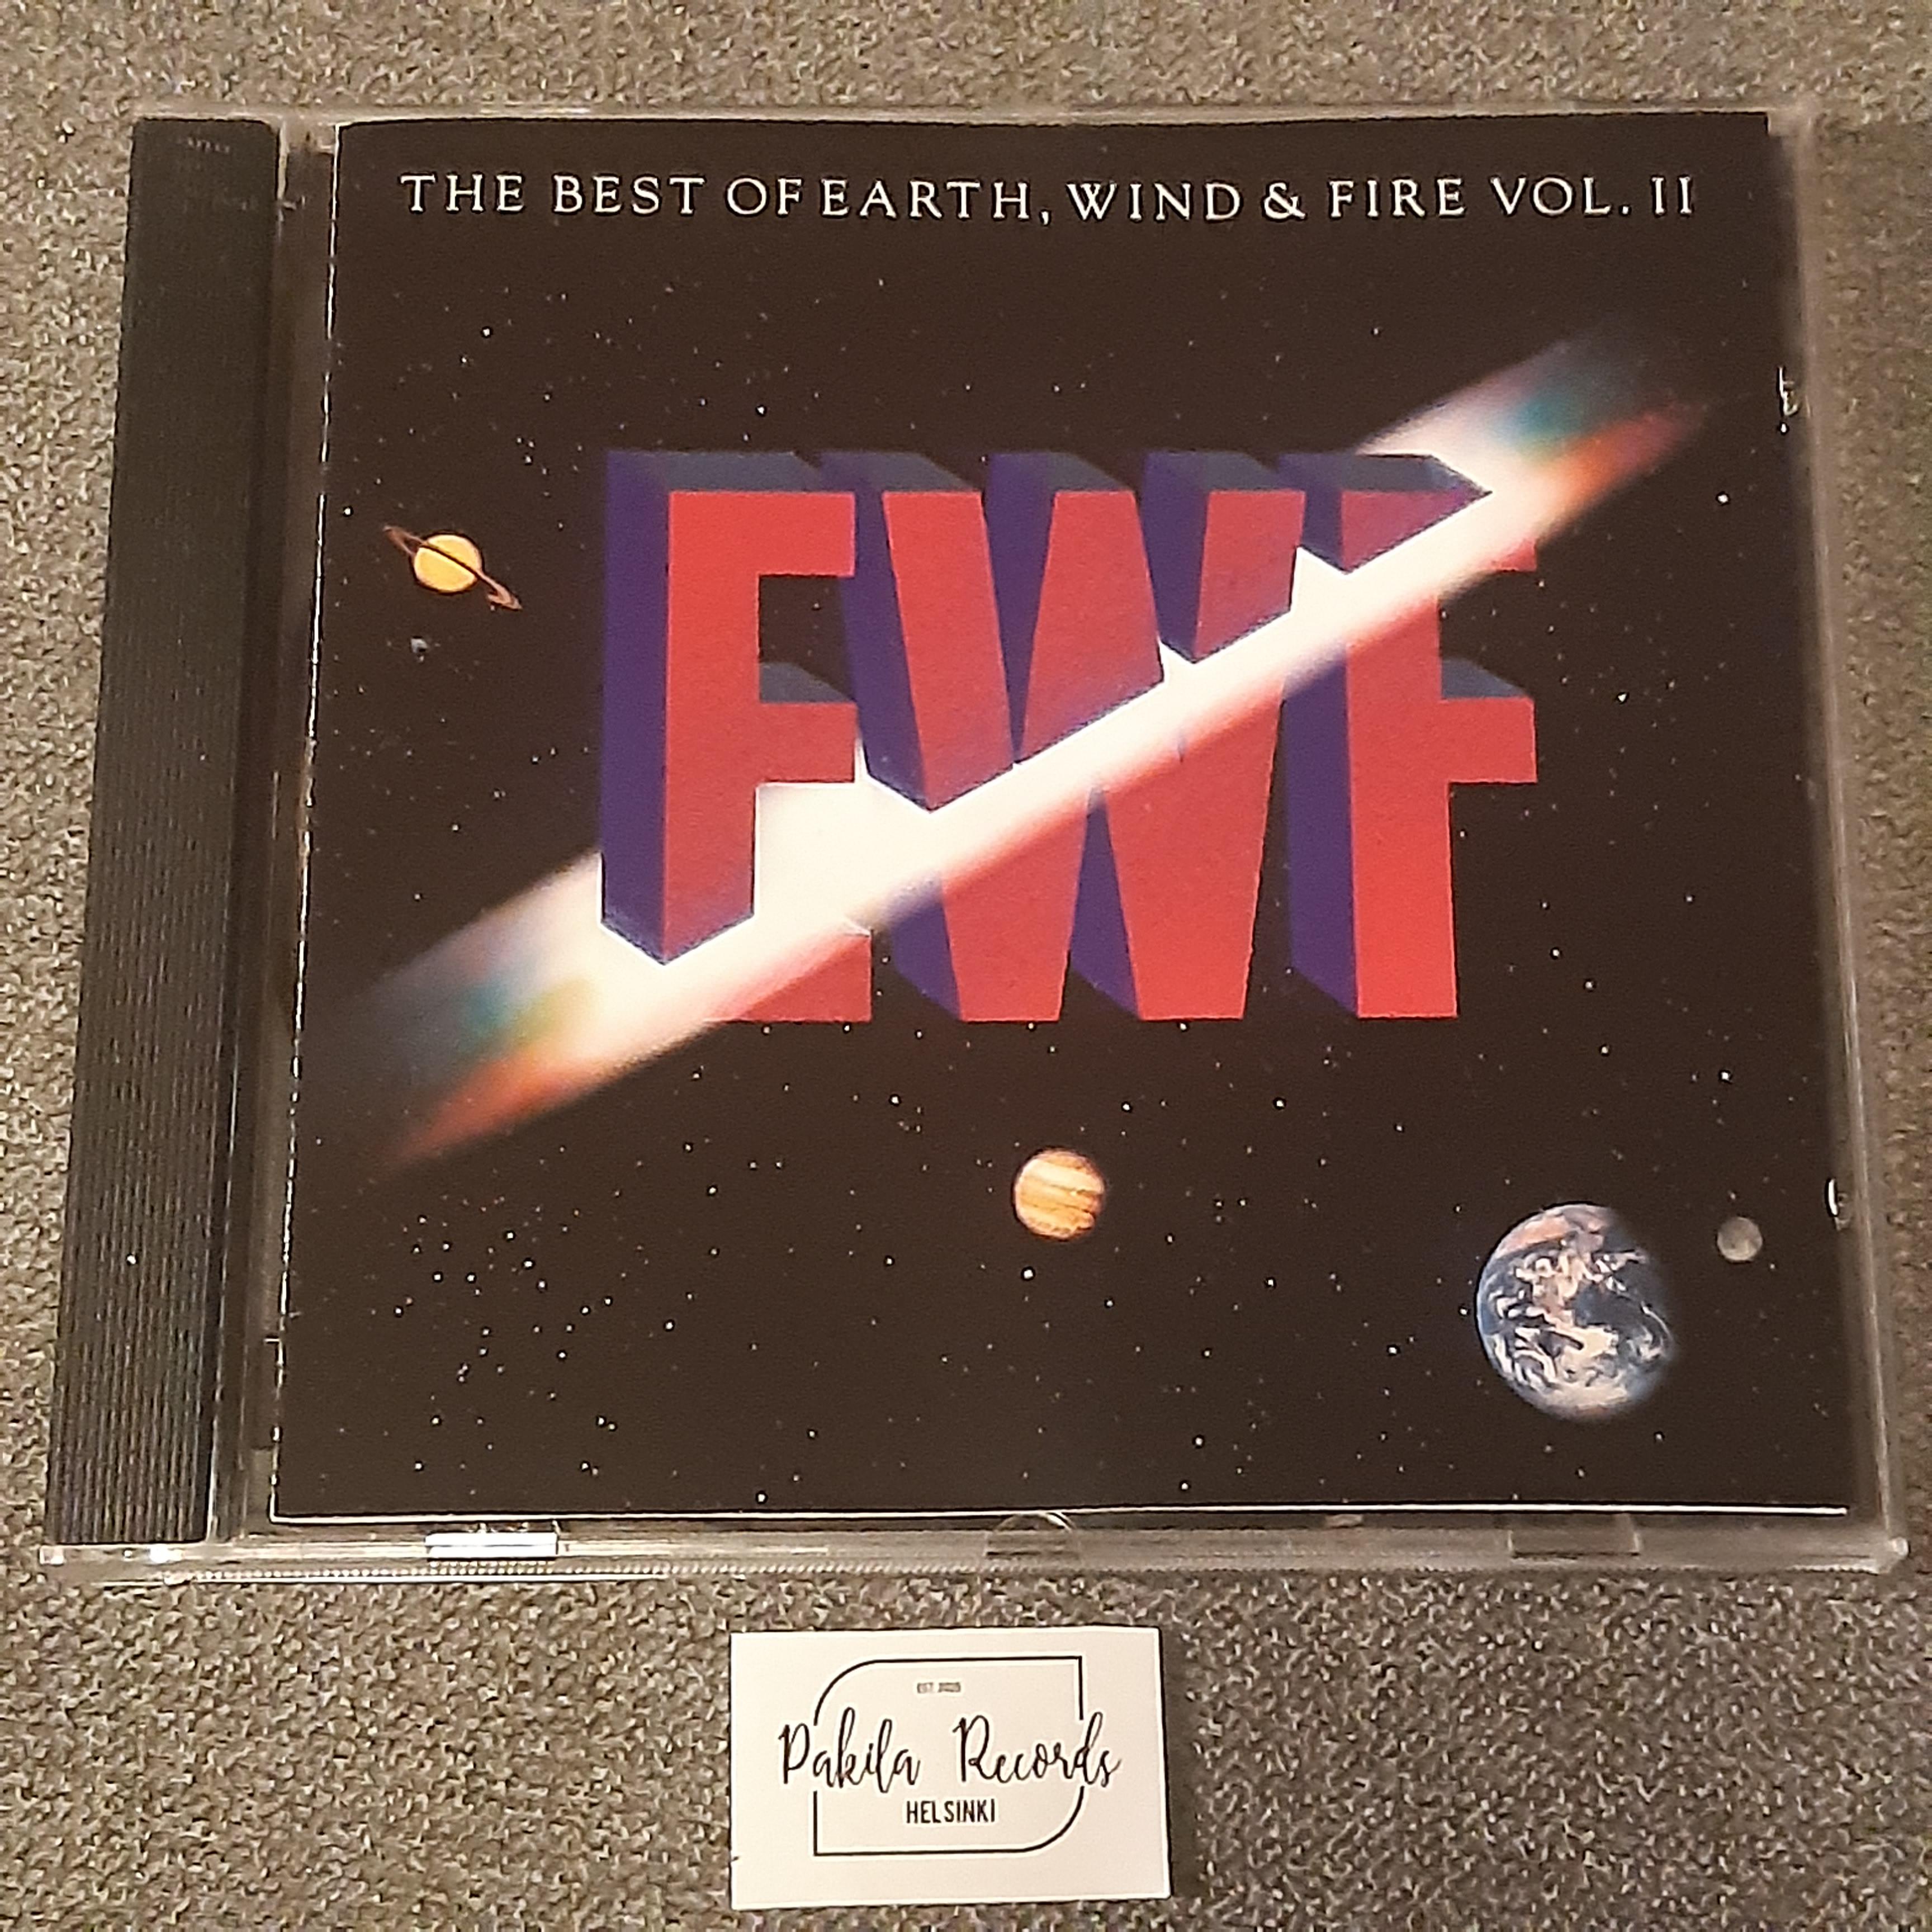 Earth, Wind & Fire - The Best Of Earth, Wind & Fire vol. II - CD (Käytetty)